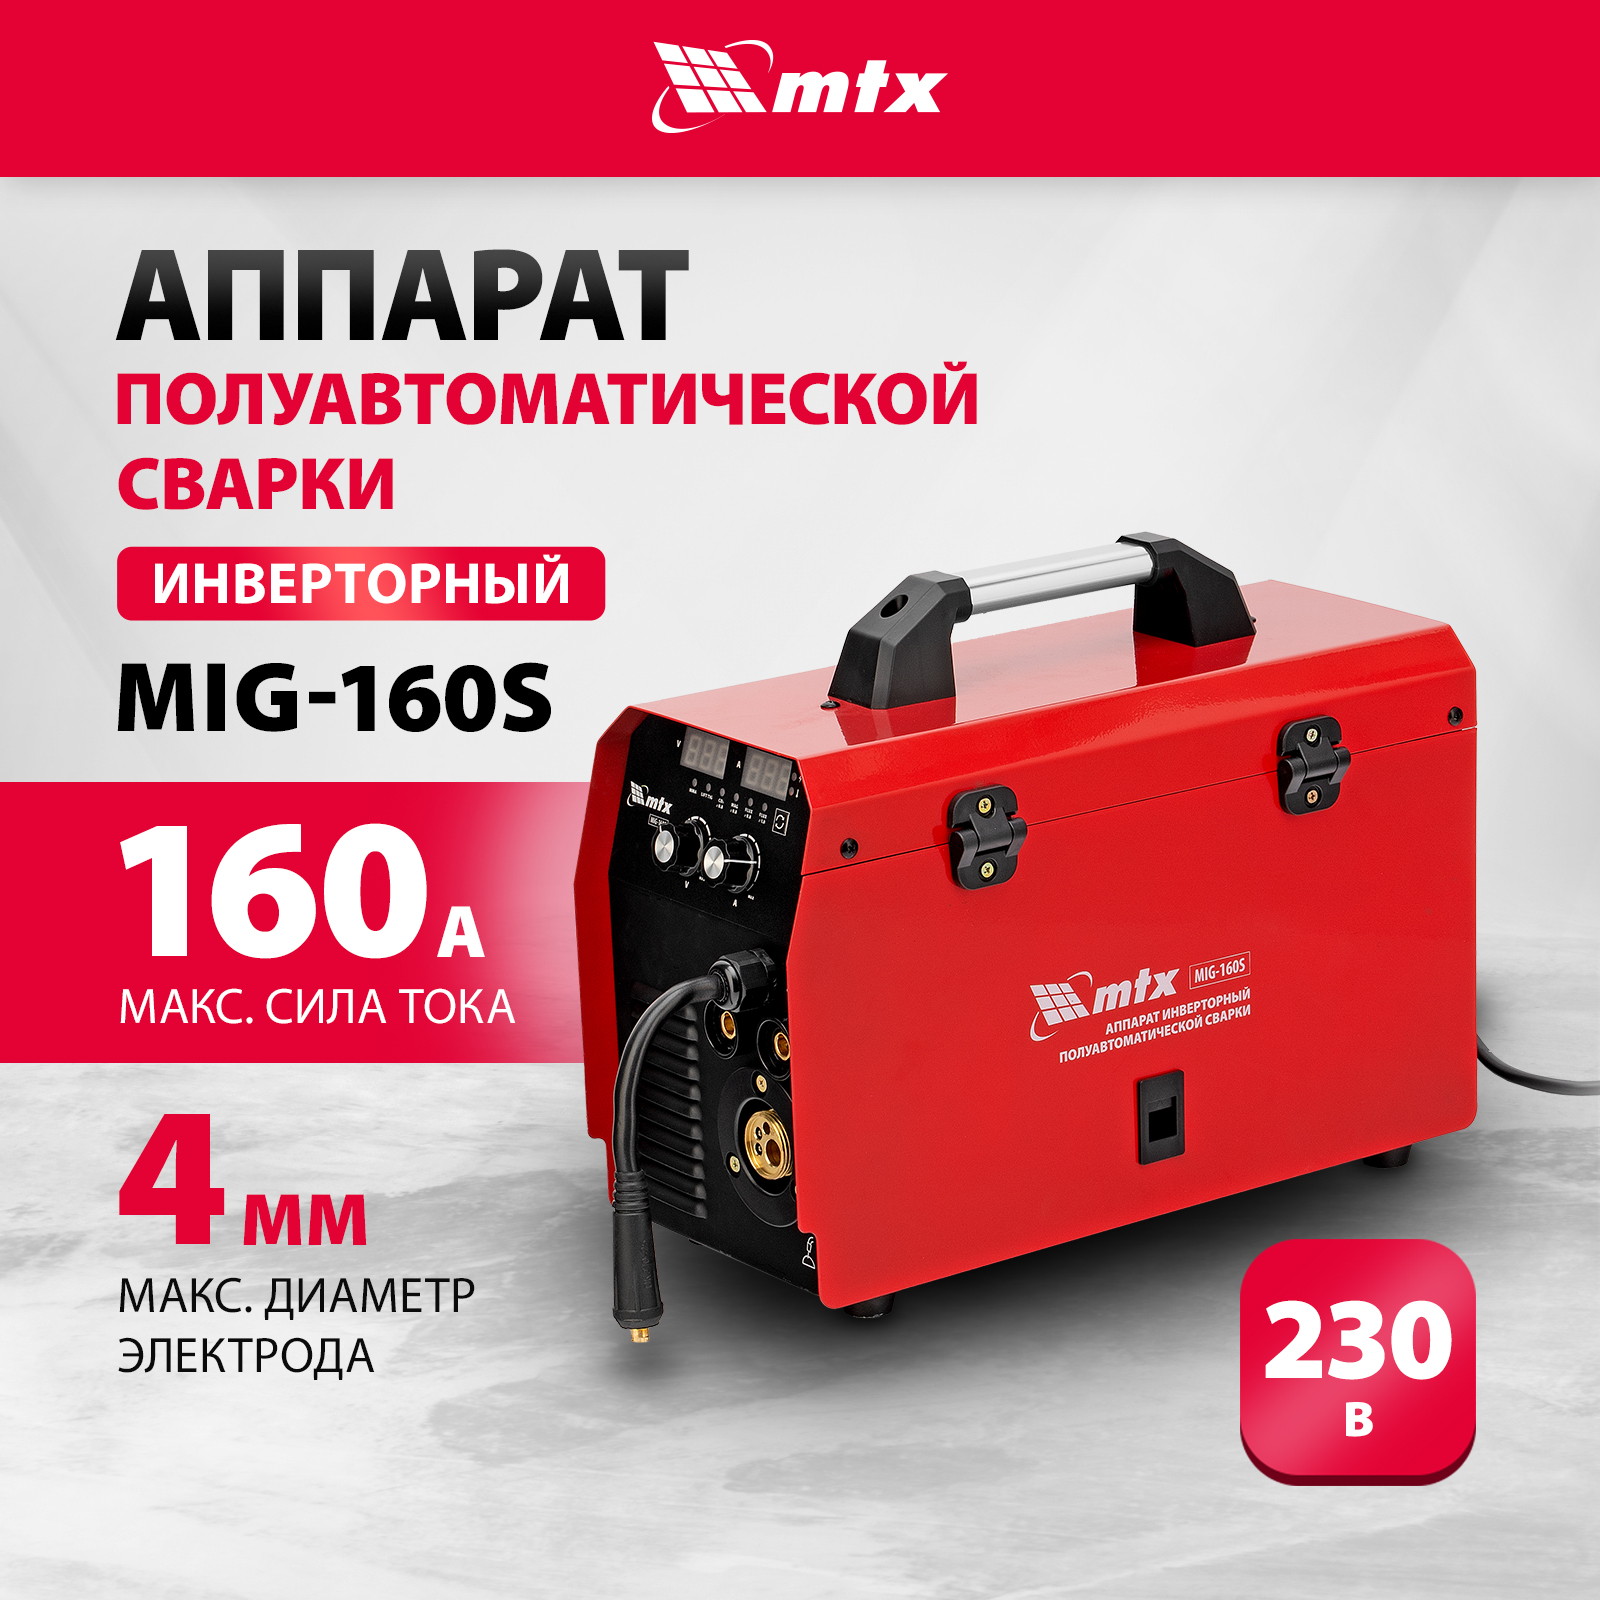 Сварочный аппарат-полуавтомат инверторный MTX MIG-160S, 160A, ПВ 60%, катушка 5 кг 94301 gemeral сварочный аппарат mig 160s 12728